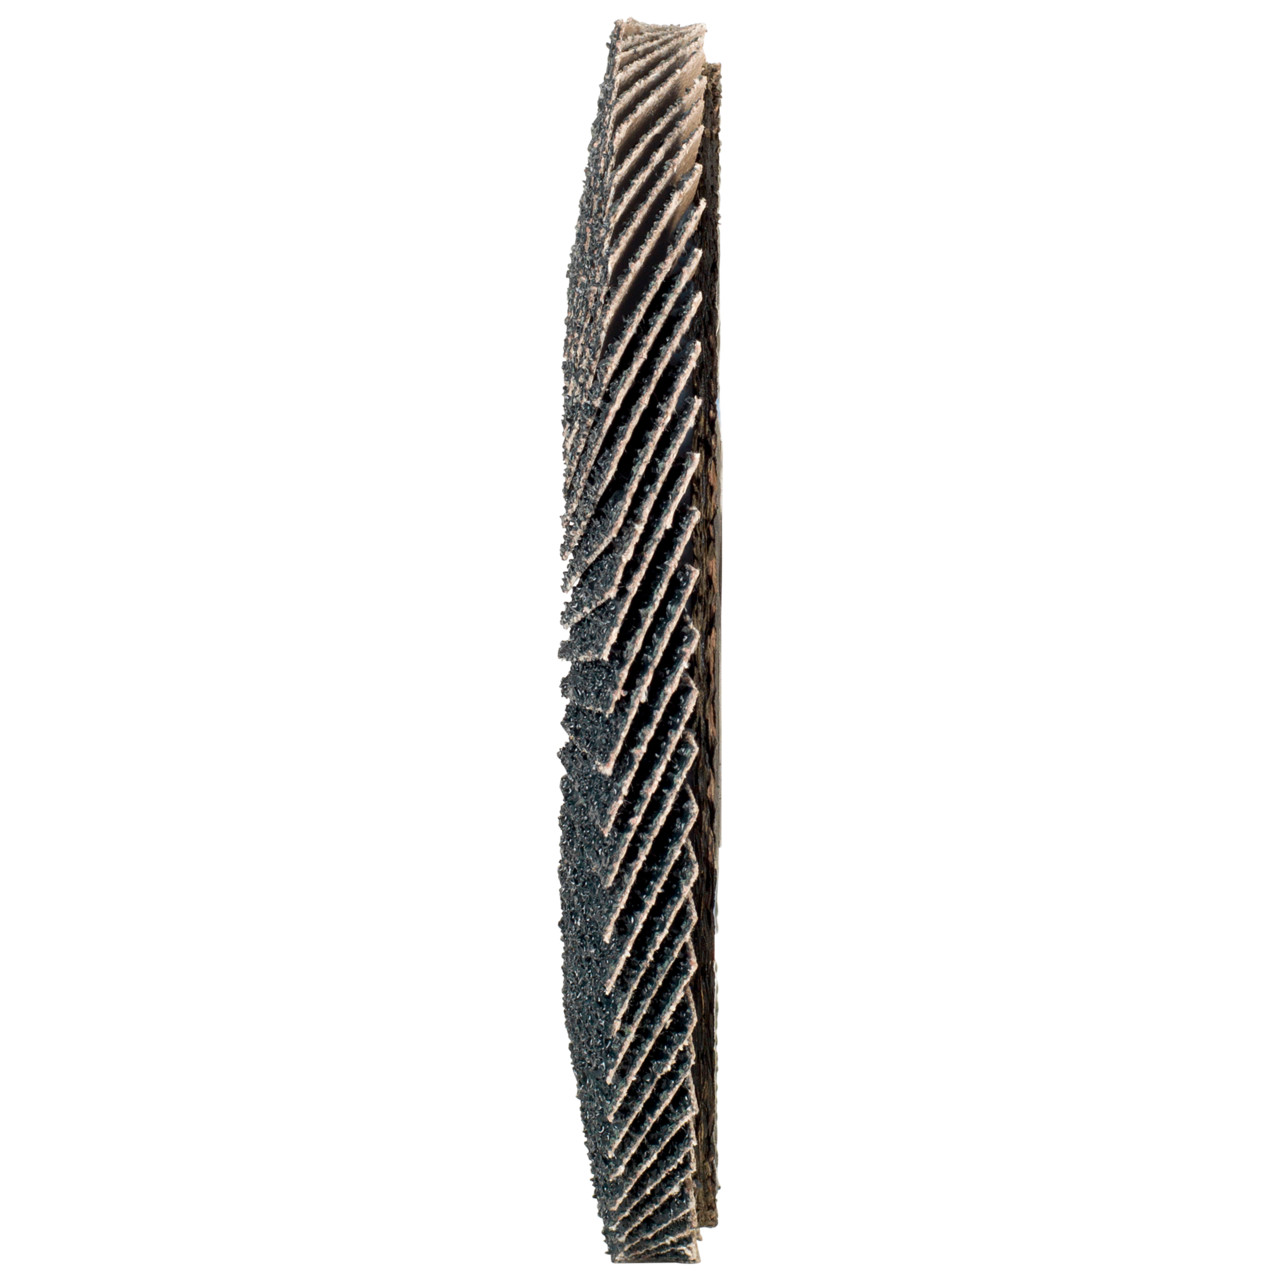 Rondella dentata Tyrolit DxH 125x22.2 2in1 per acciaio e acciaio inox, P80, forma: 27A - versione a manovella (versione con corpo portante in fibra di vetro), Art. 668665